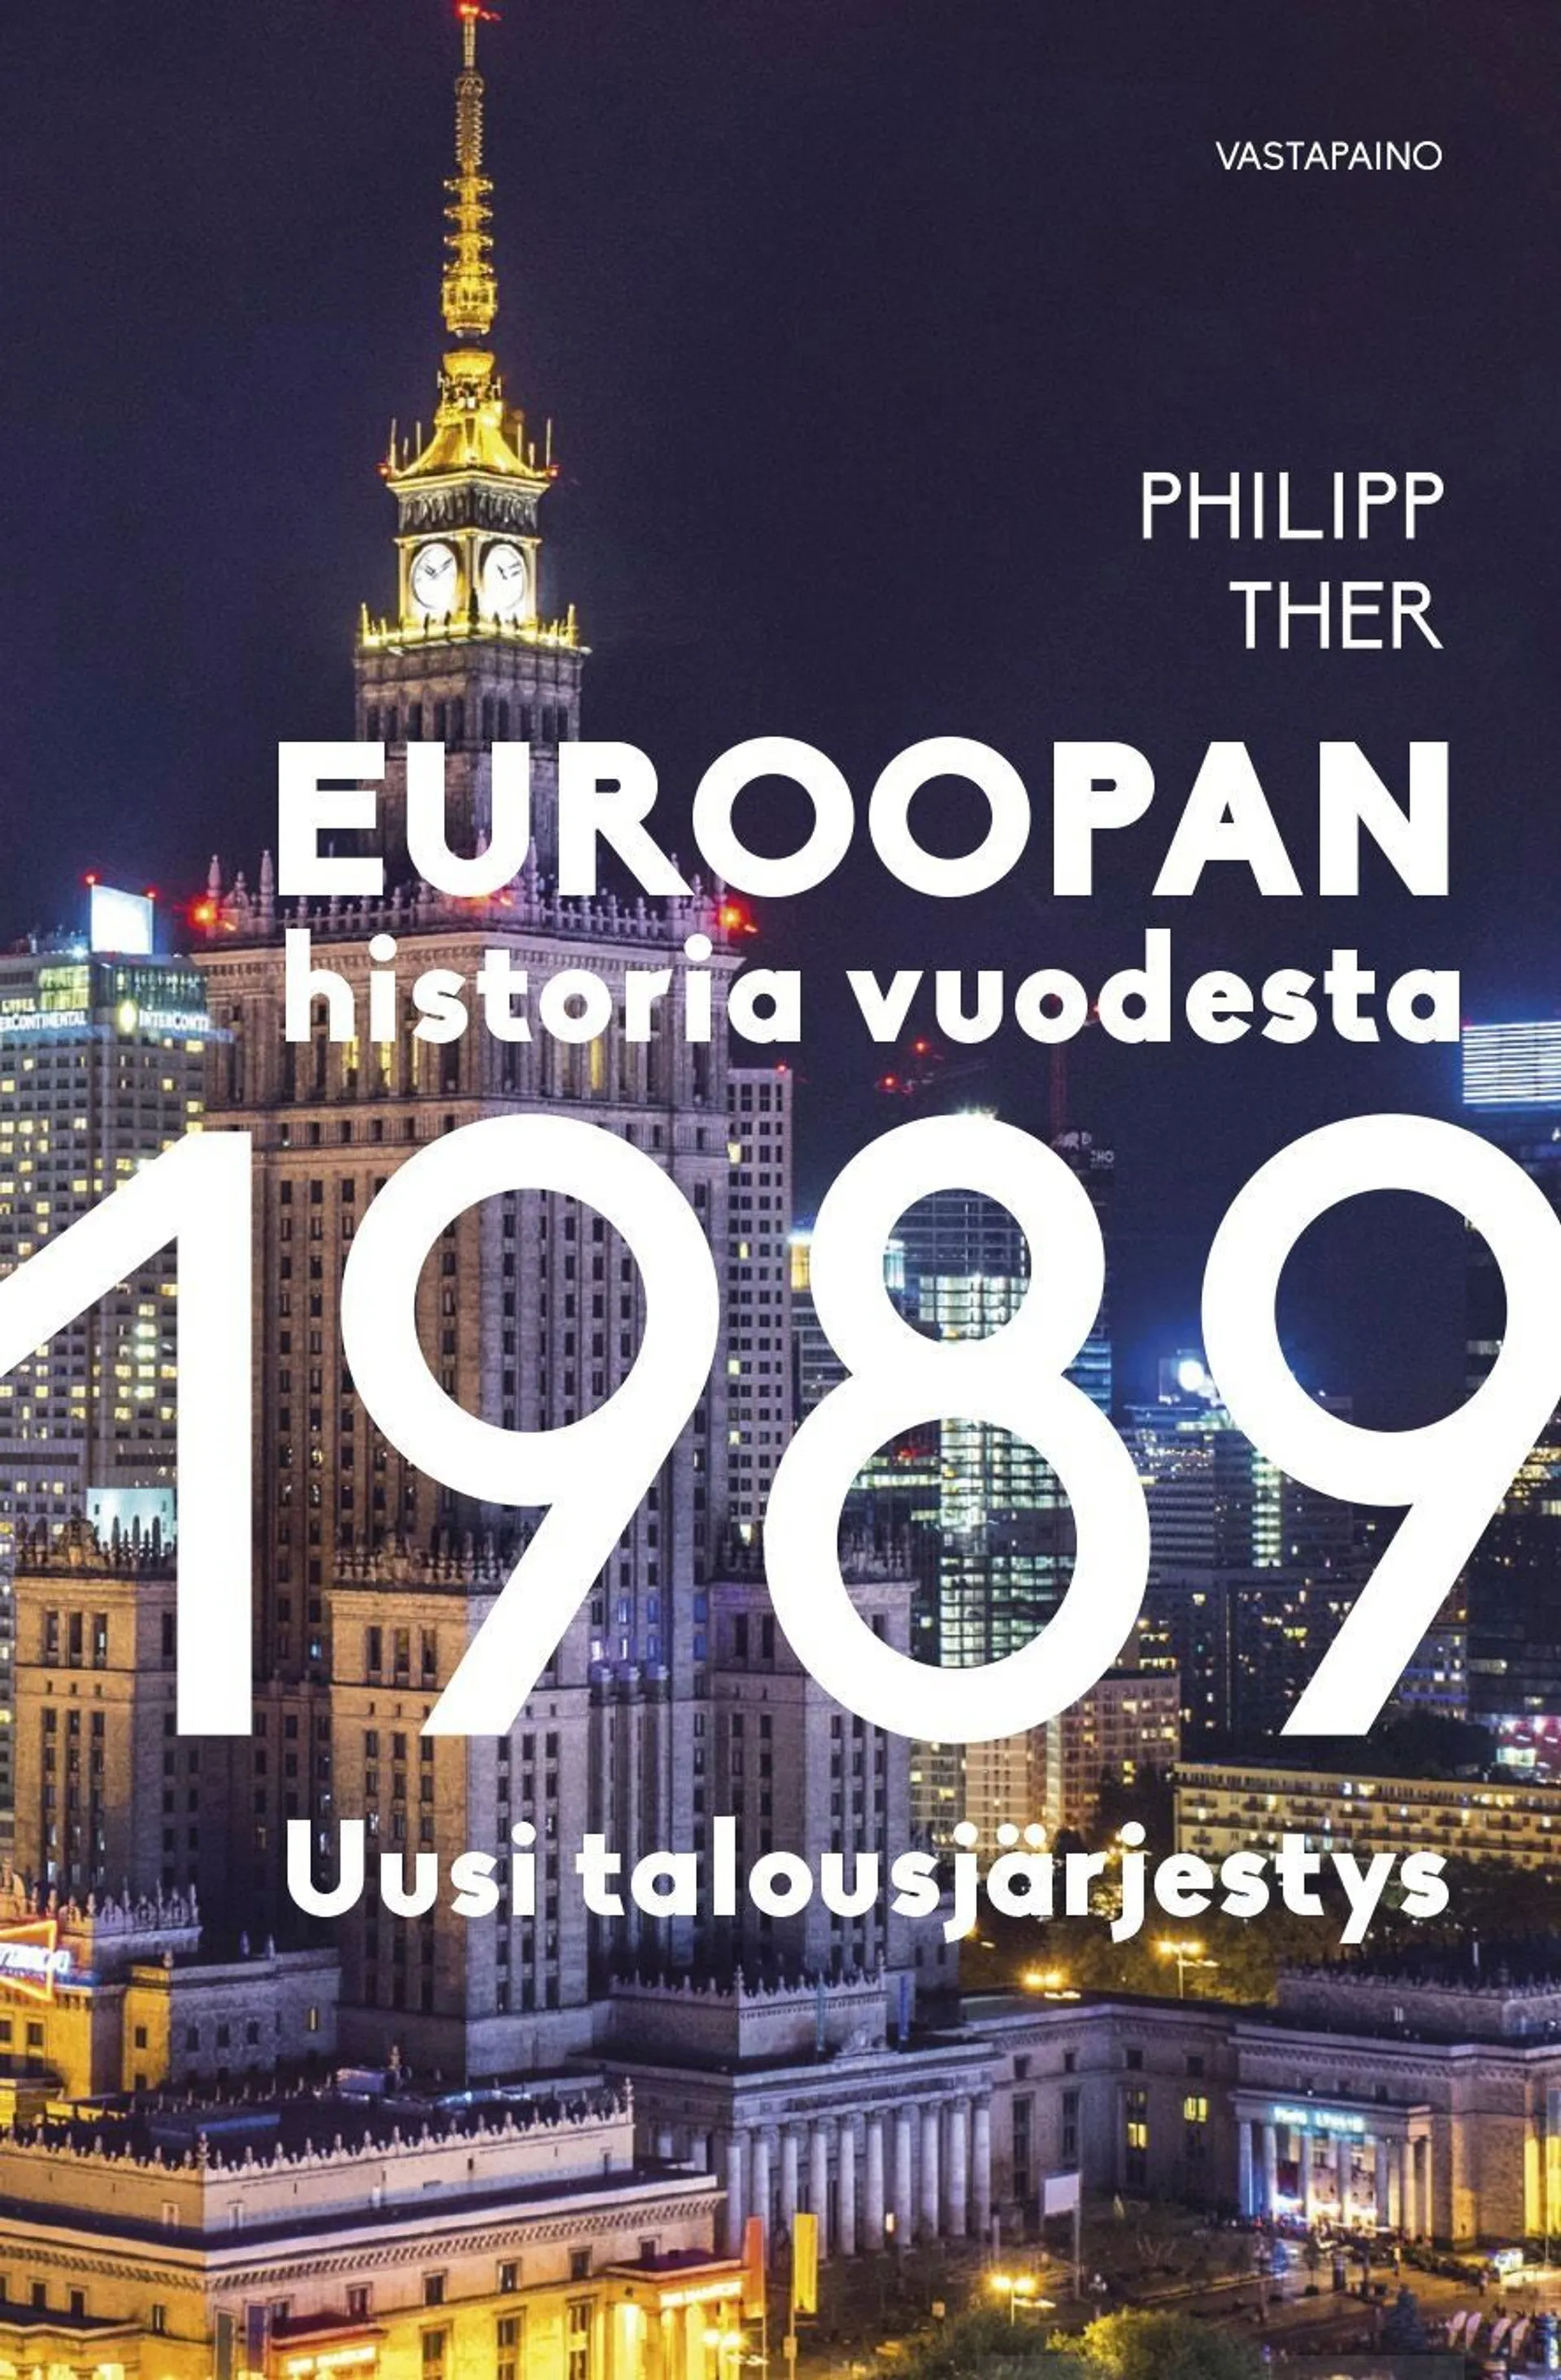 Ther, Euroopan historia vuodesta 1989